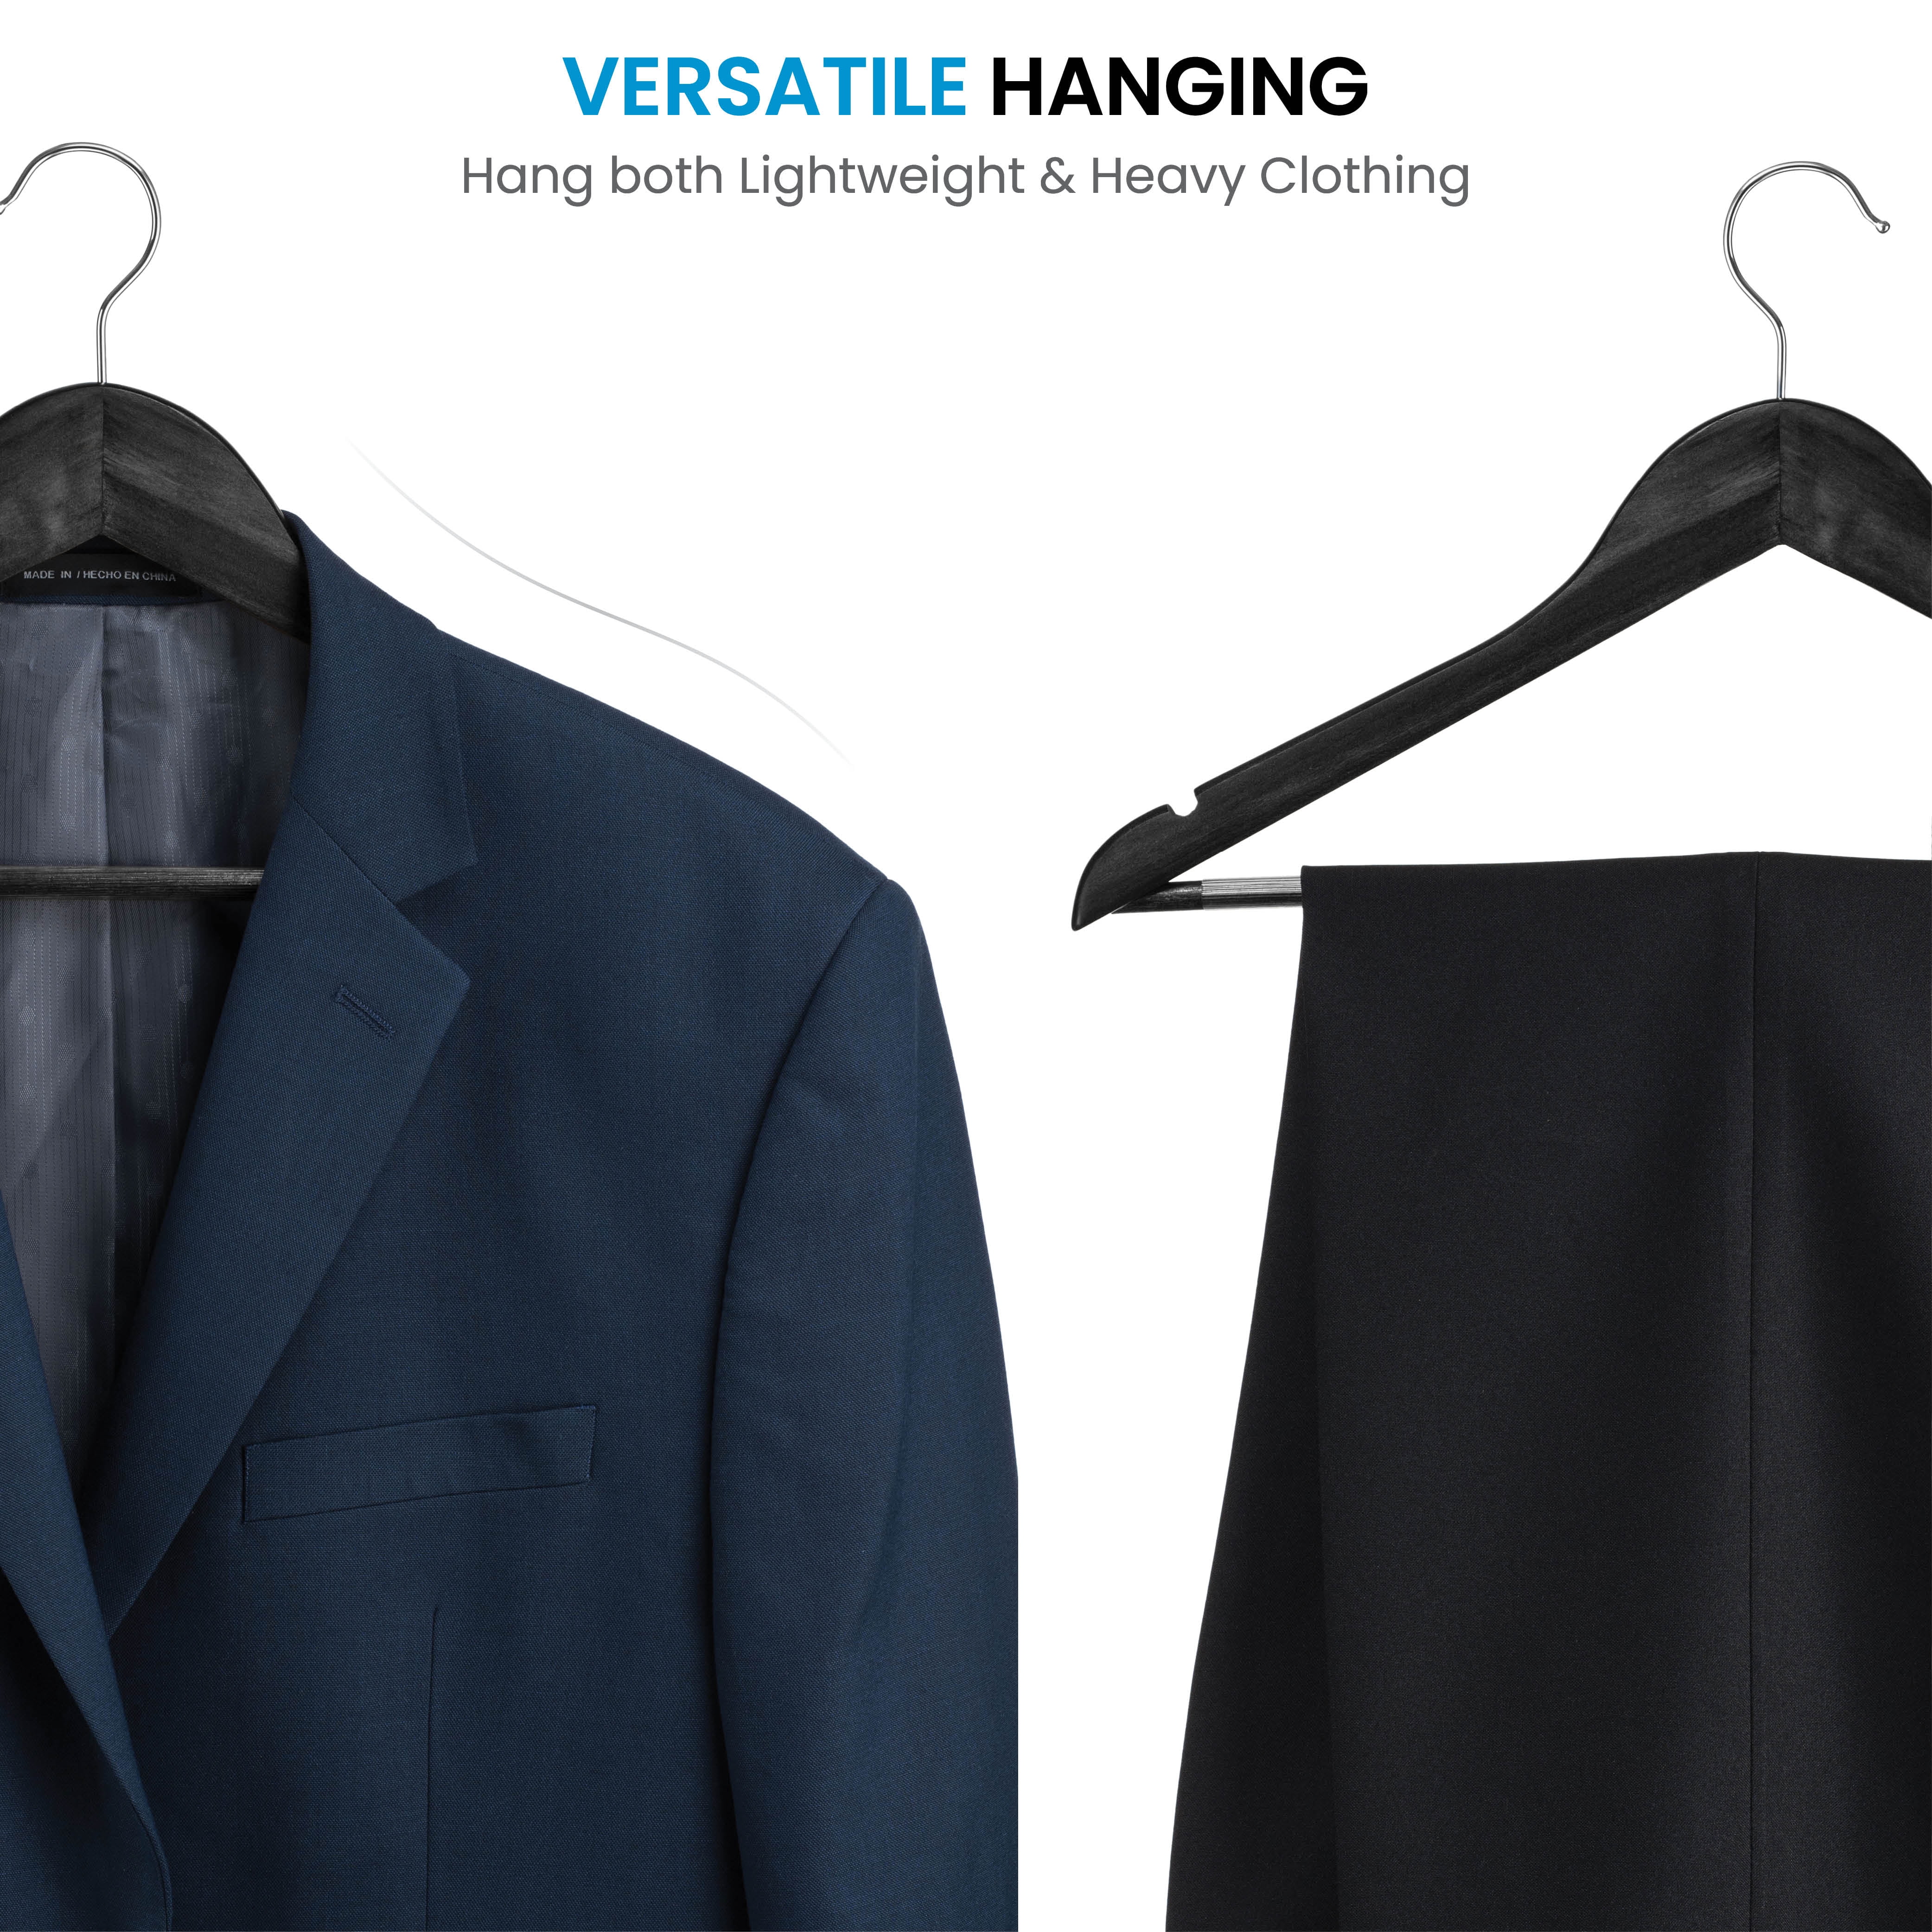 Natural Wooden Suit Hanger w/ Non Slip Pants Bar –